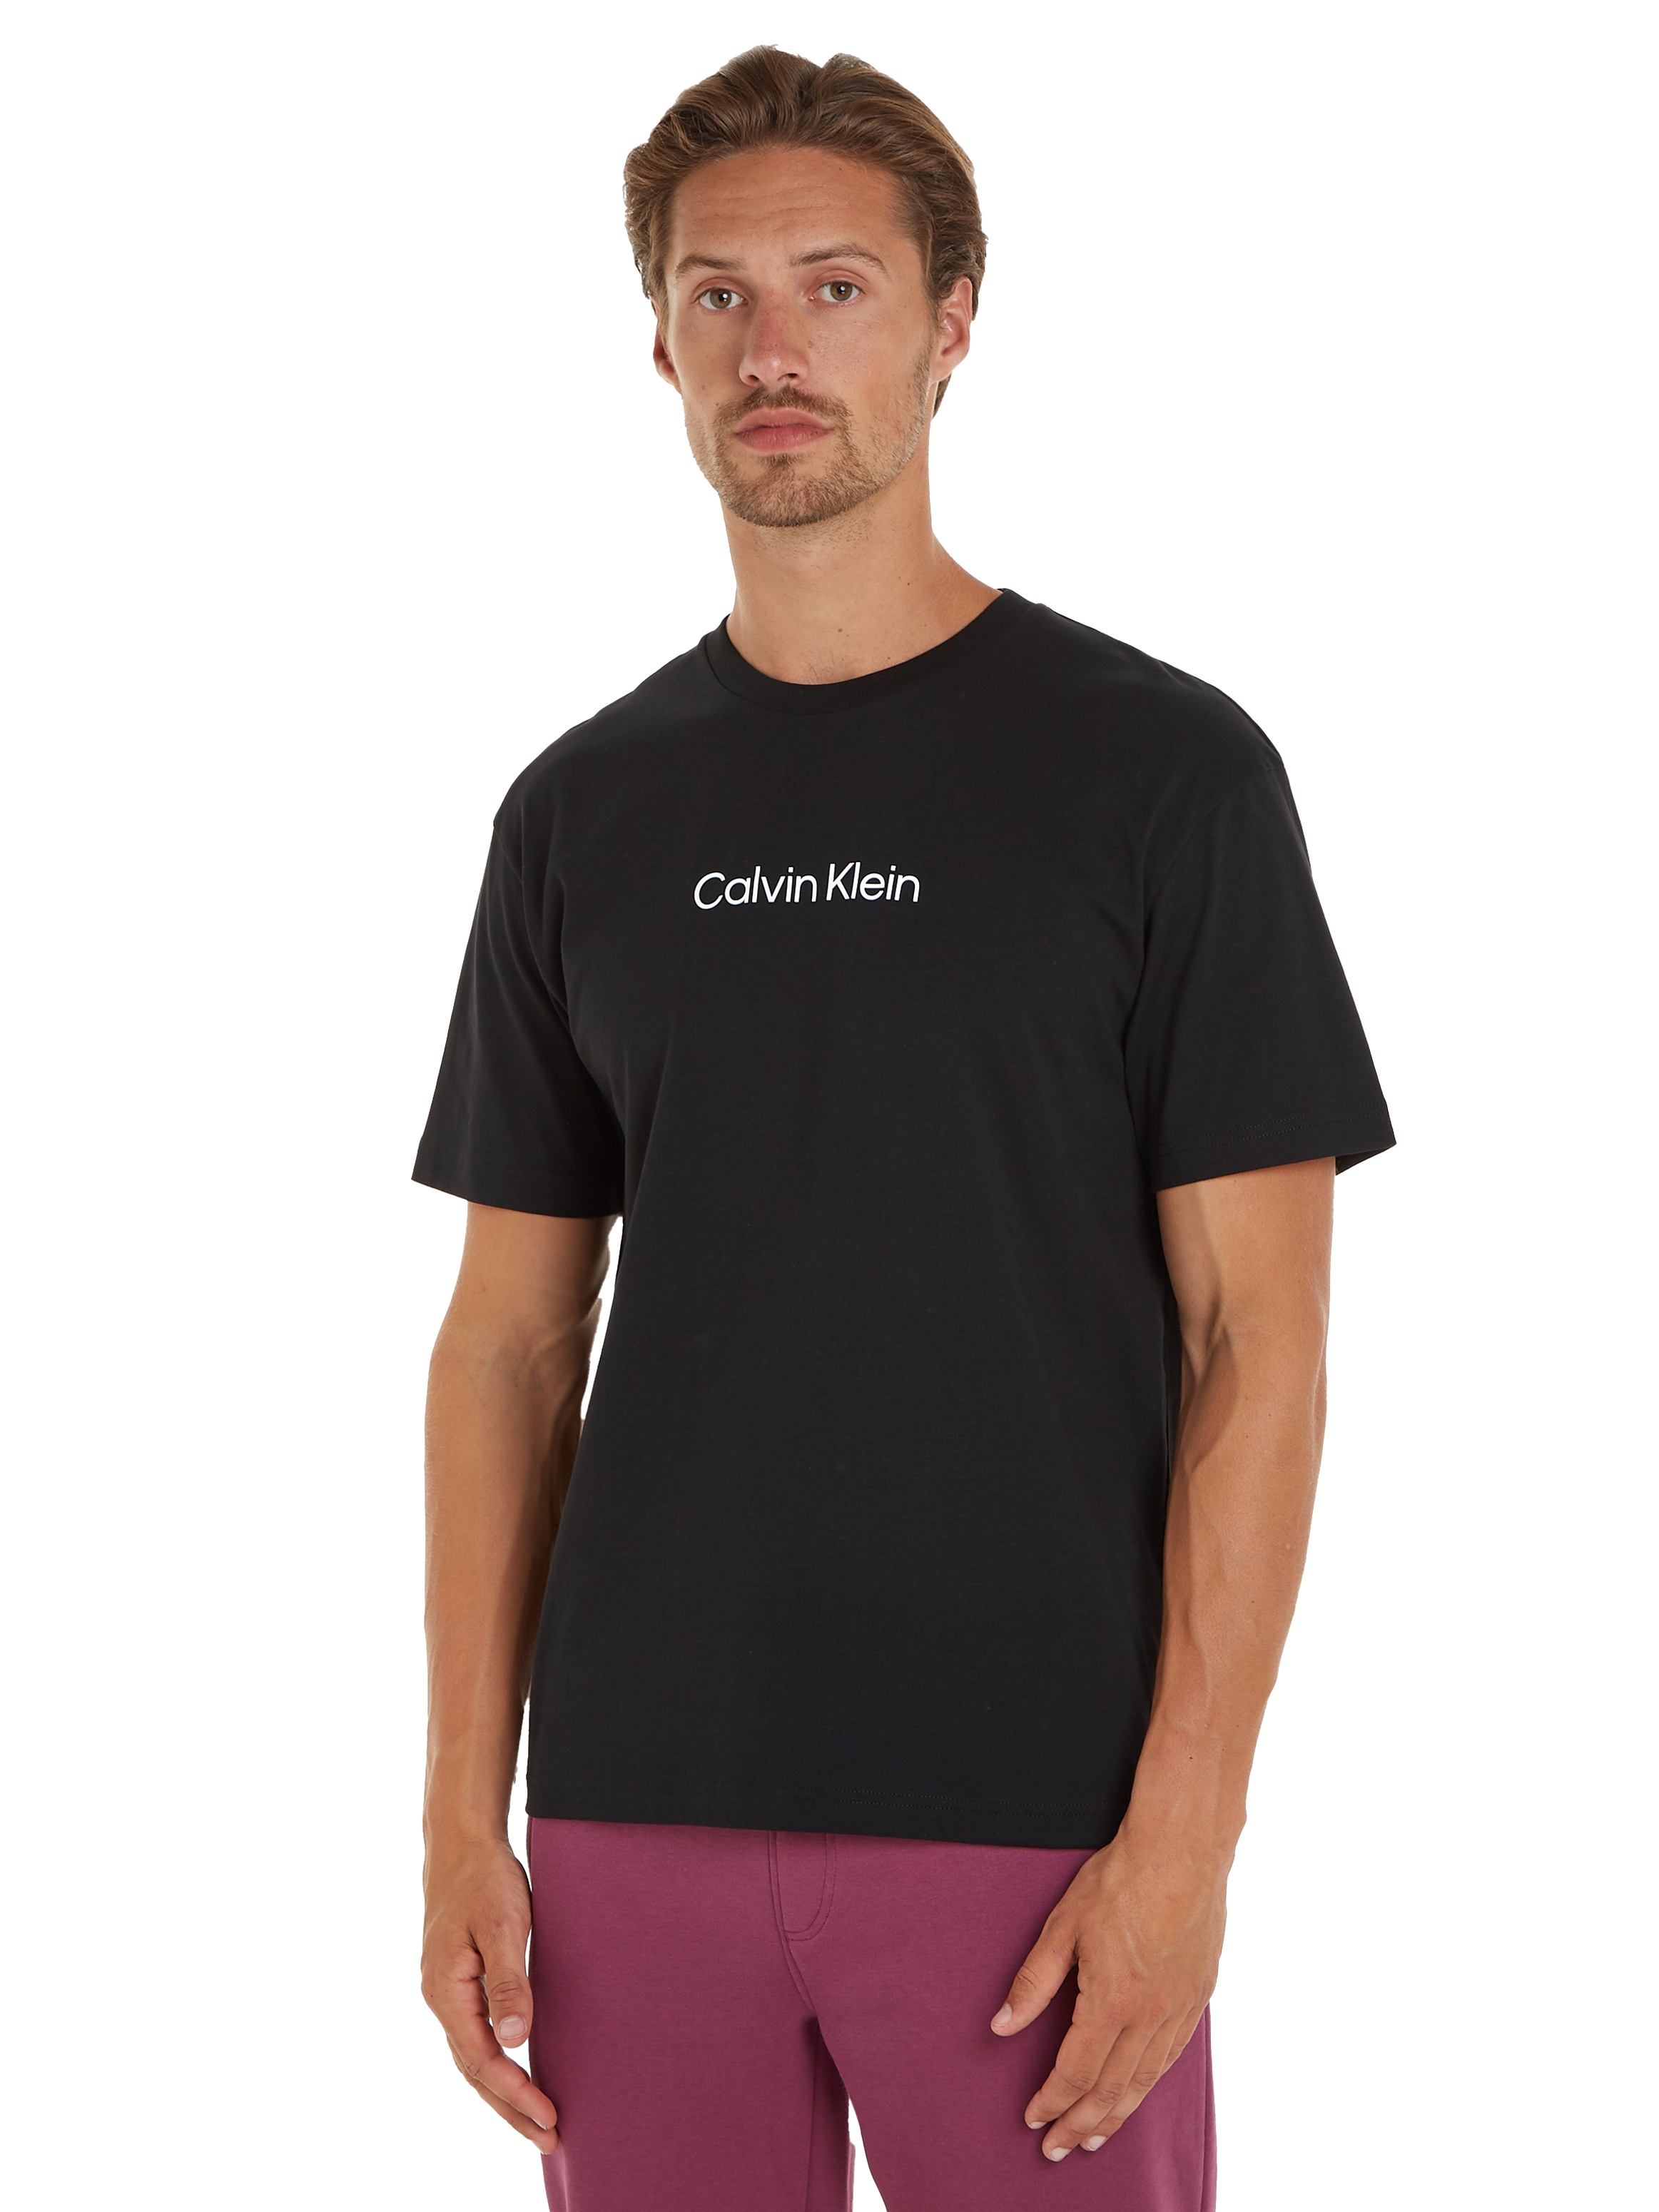 Calvin Klein mit bei T-SHIRT«, COMFORT aufgedrucktem »HERO ♕ Markenlabel T-Shirt LOGO